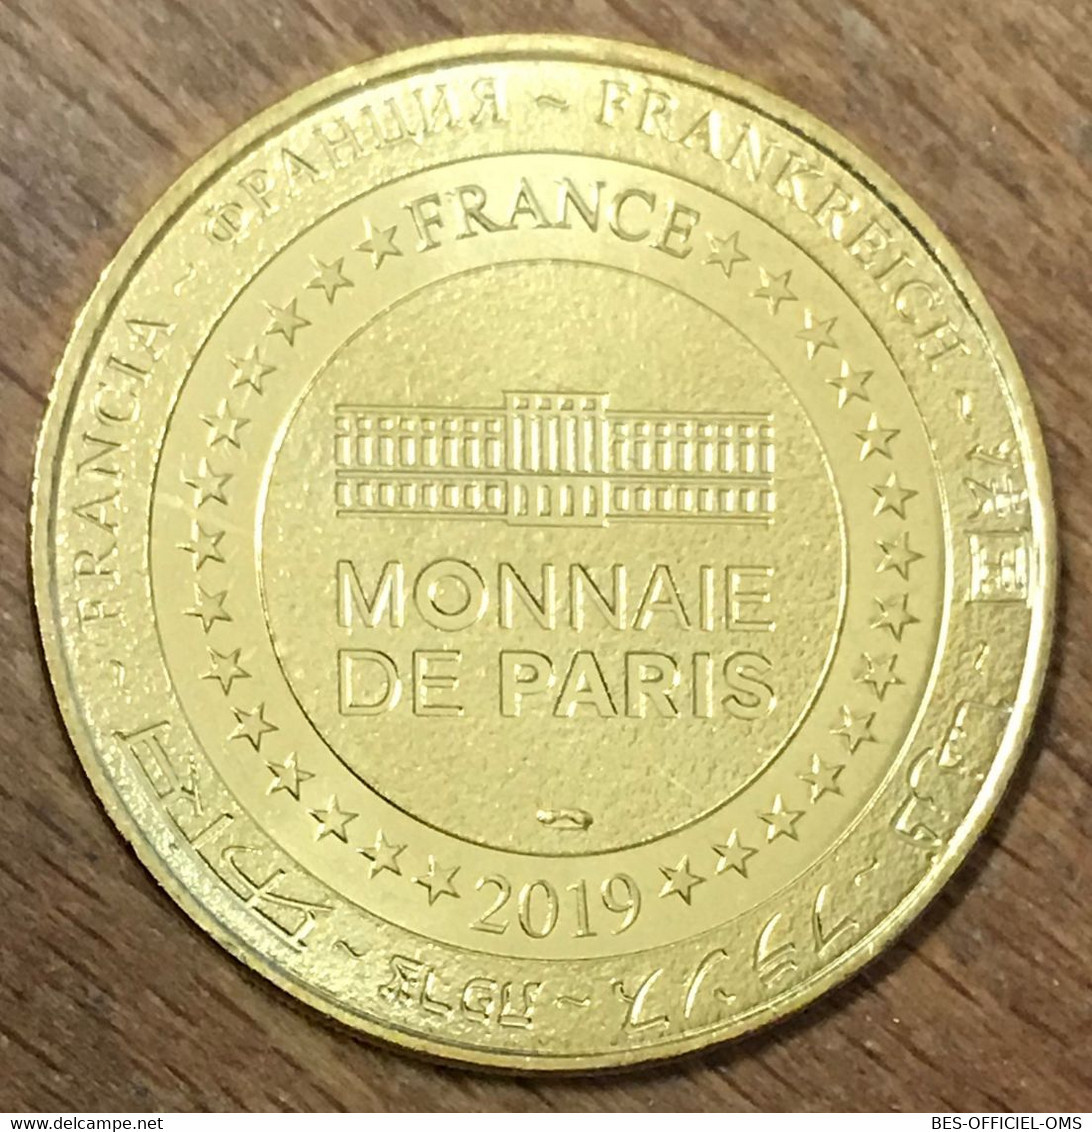 77 DISNEYLAND MICKEY SORCIER DISNEY MDP 2019 MÉDAILLE MONNAIE DE PARIS JETON TOURISTIQUE MEDALS COINS TOKENS - 2019